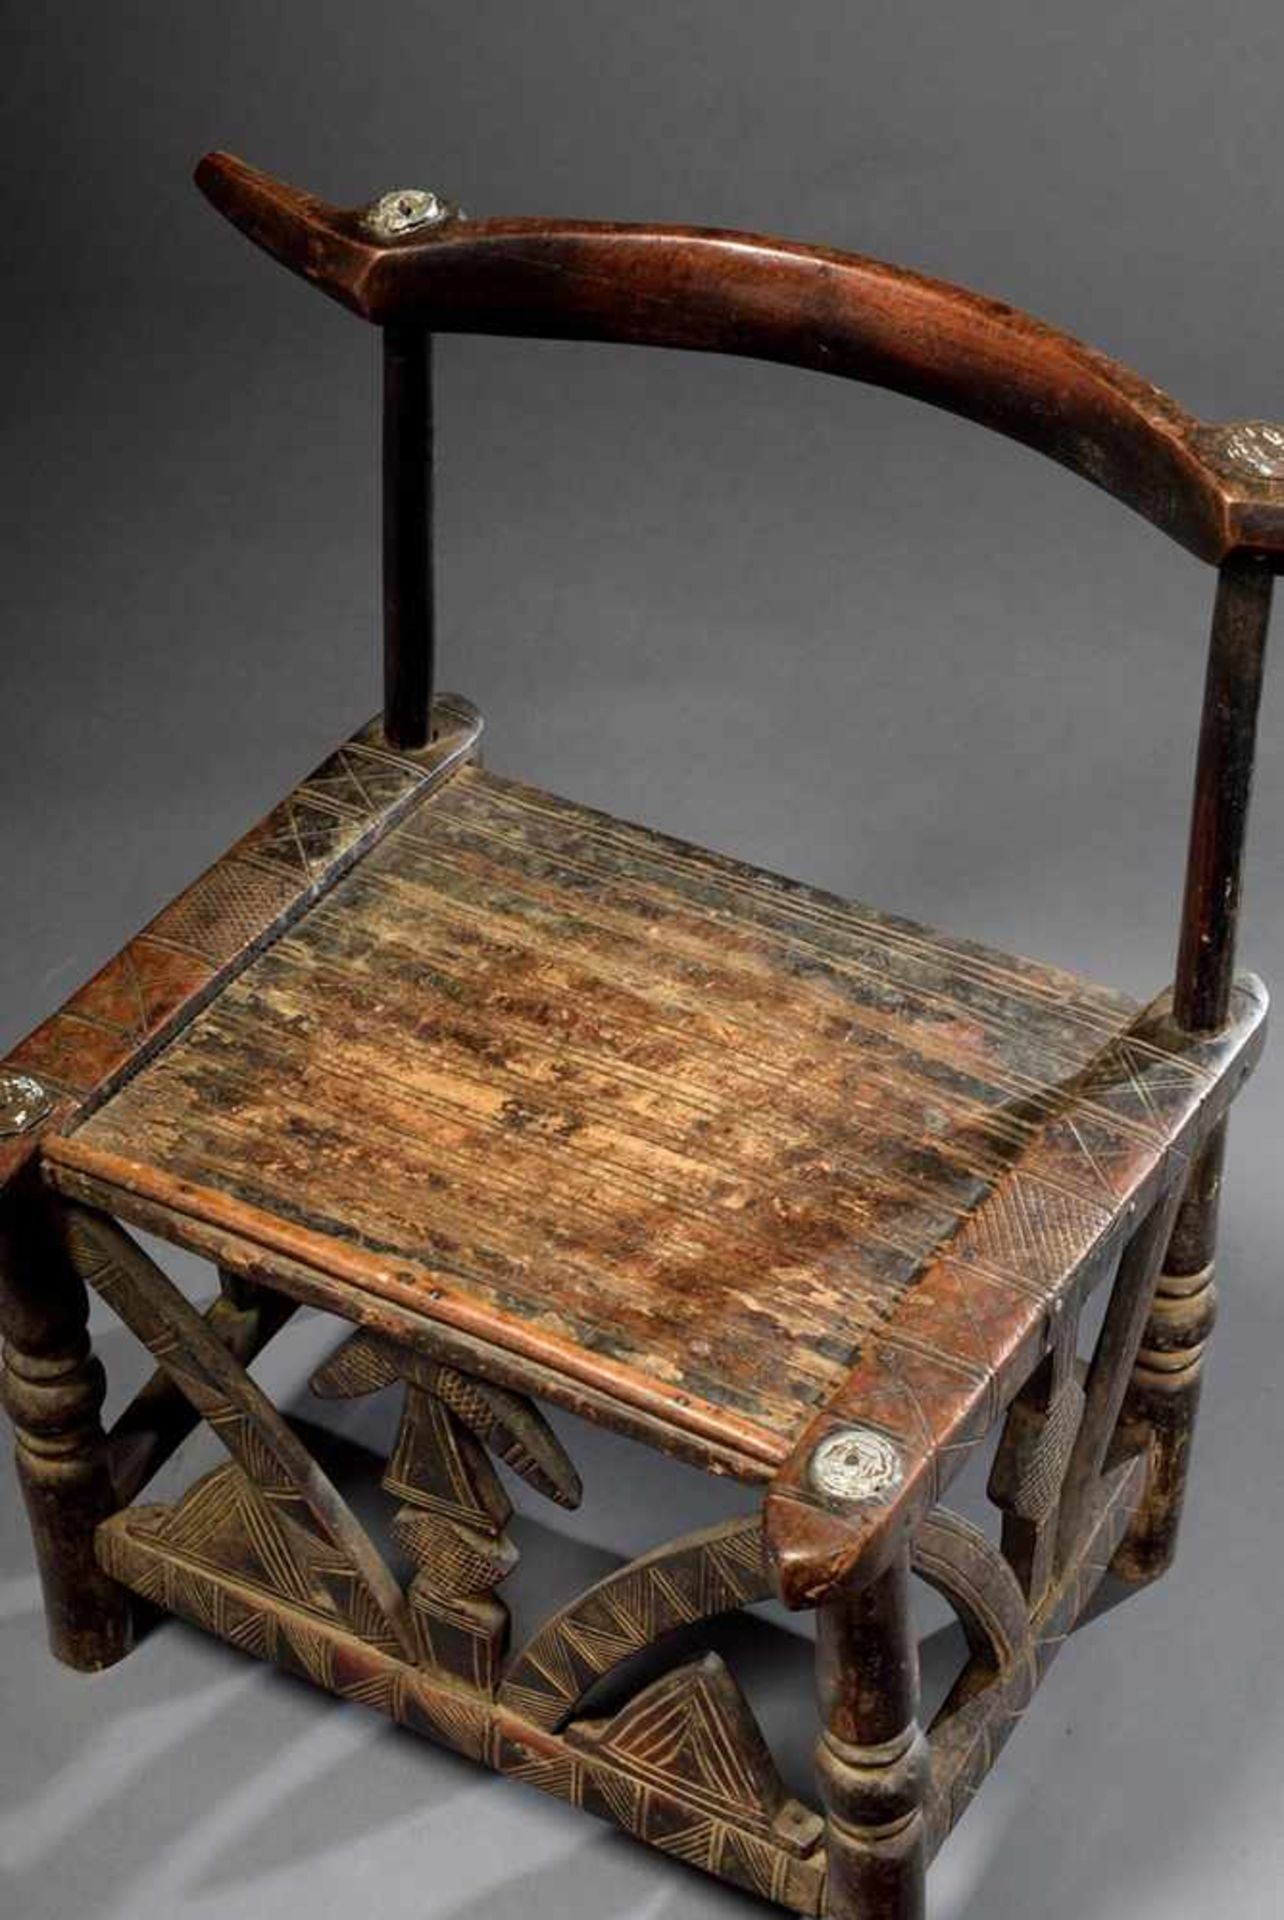 Senufo Stuhl mit stark verziertem Gestell, Holz mit Metallapplikationen, Elfenbeinküste, 67x66x44cm, - Bild 2 aus 4